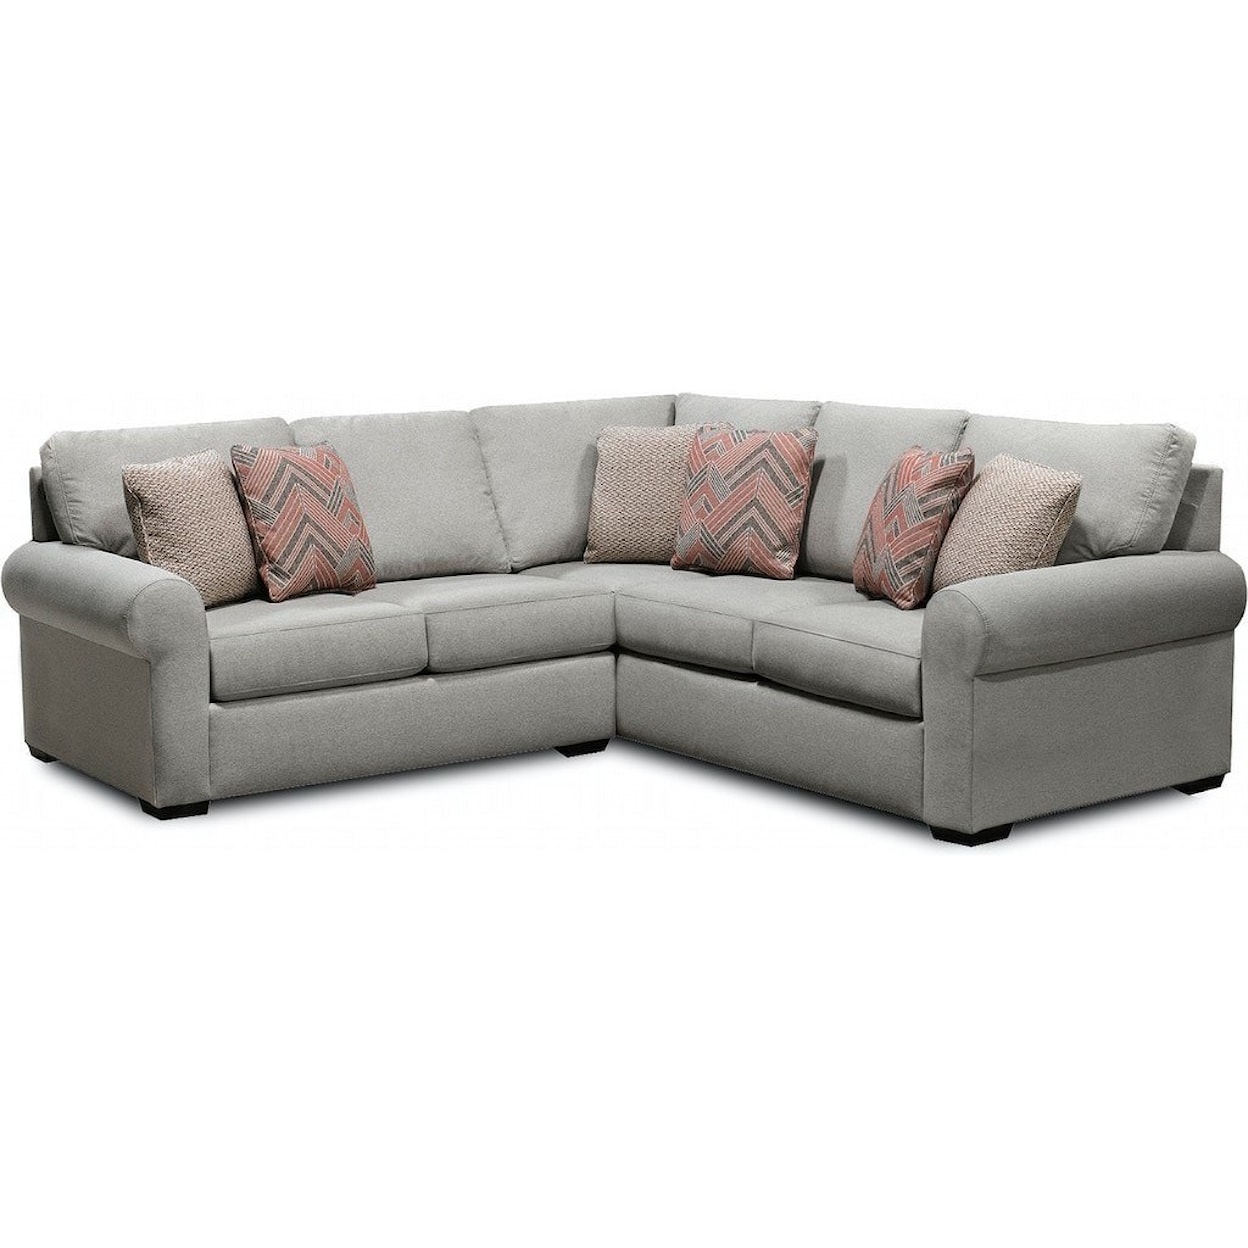 England 2650 Series Sectional Sofa